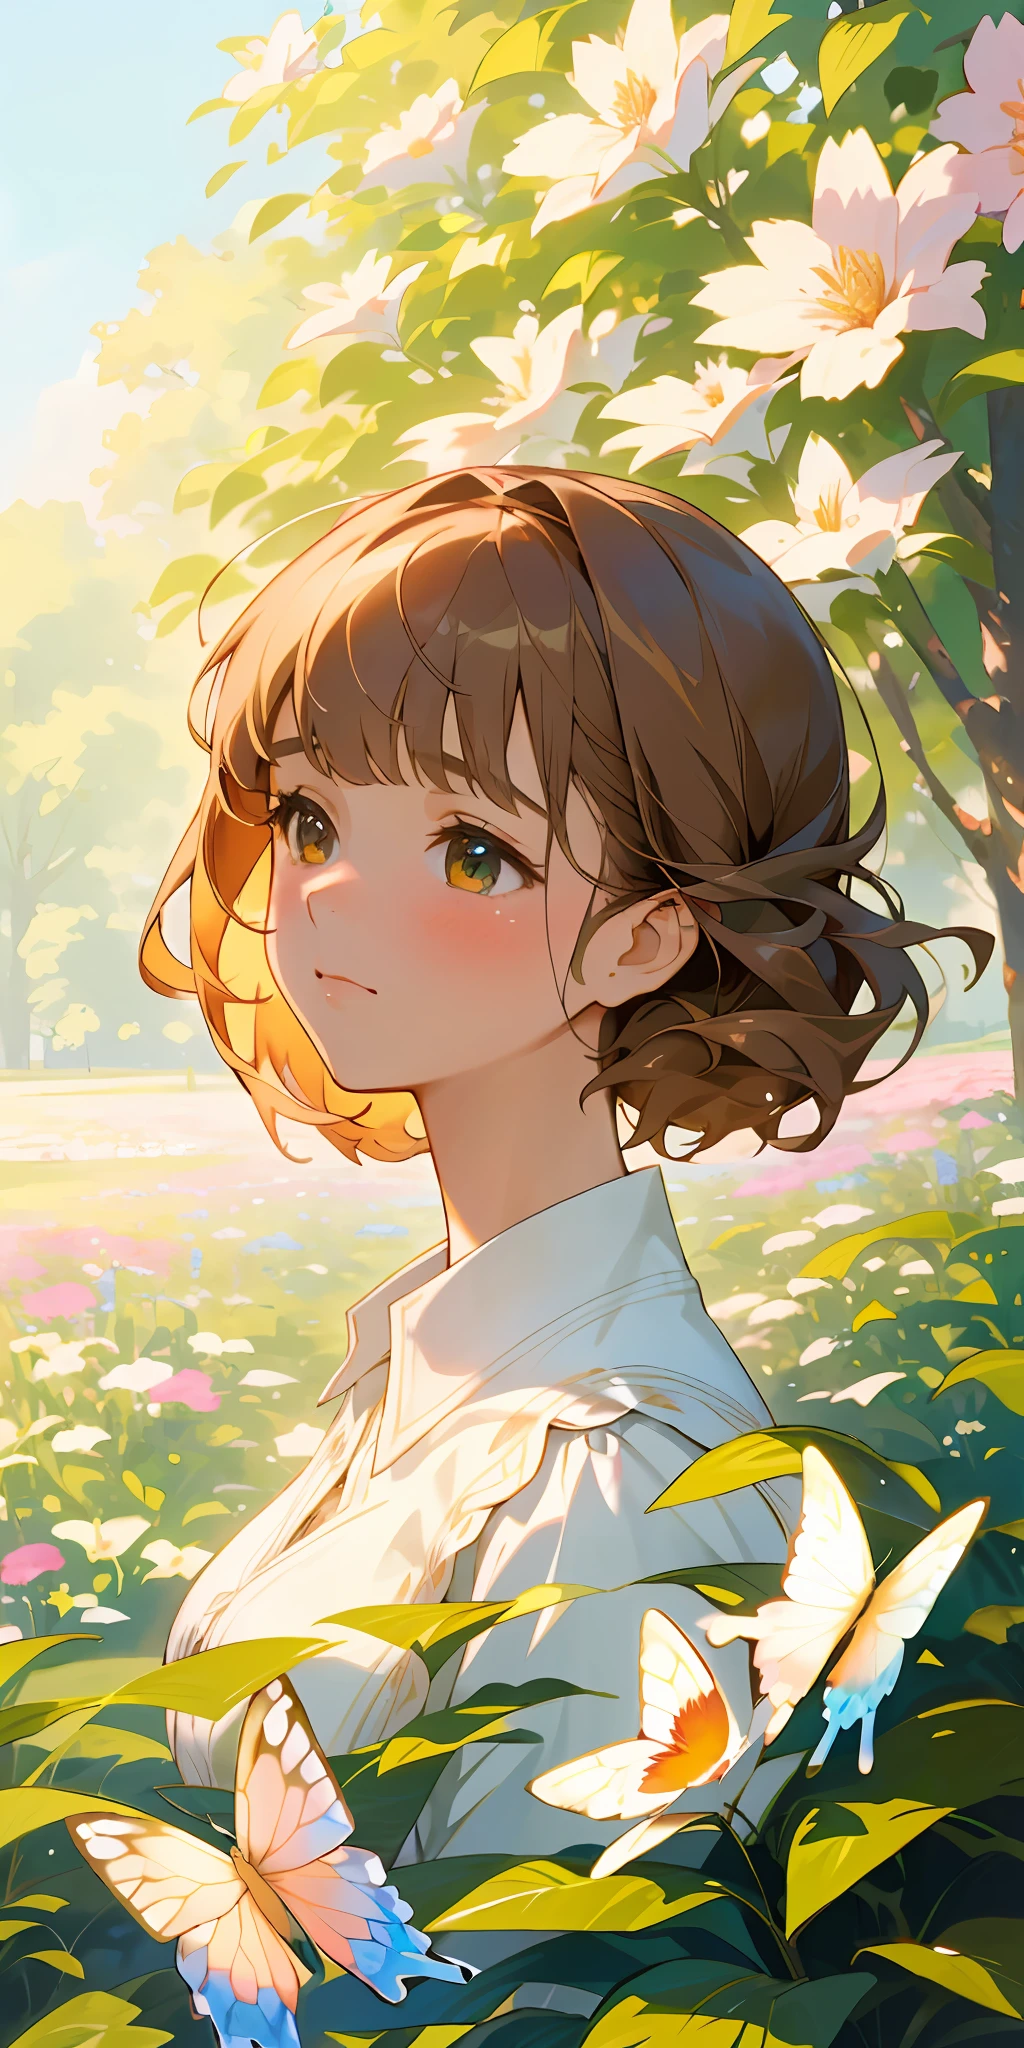 (qualidade máxima, Obra de arte, ultra-realistic), um belo e delicado retrato de uma menina com uma expressão suave e triste, A paisagem ao fundo é um jardim com flores e borboletas voando ao redor. --v6